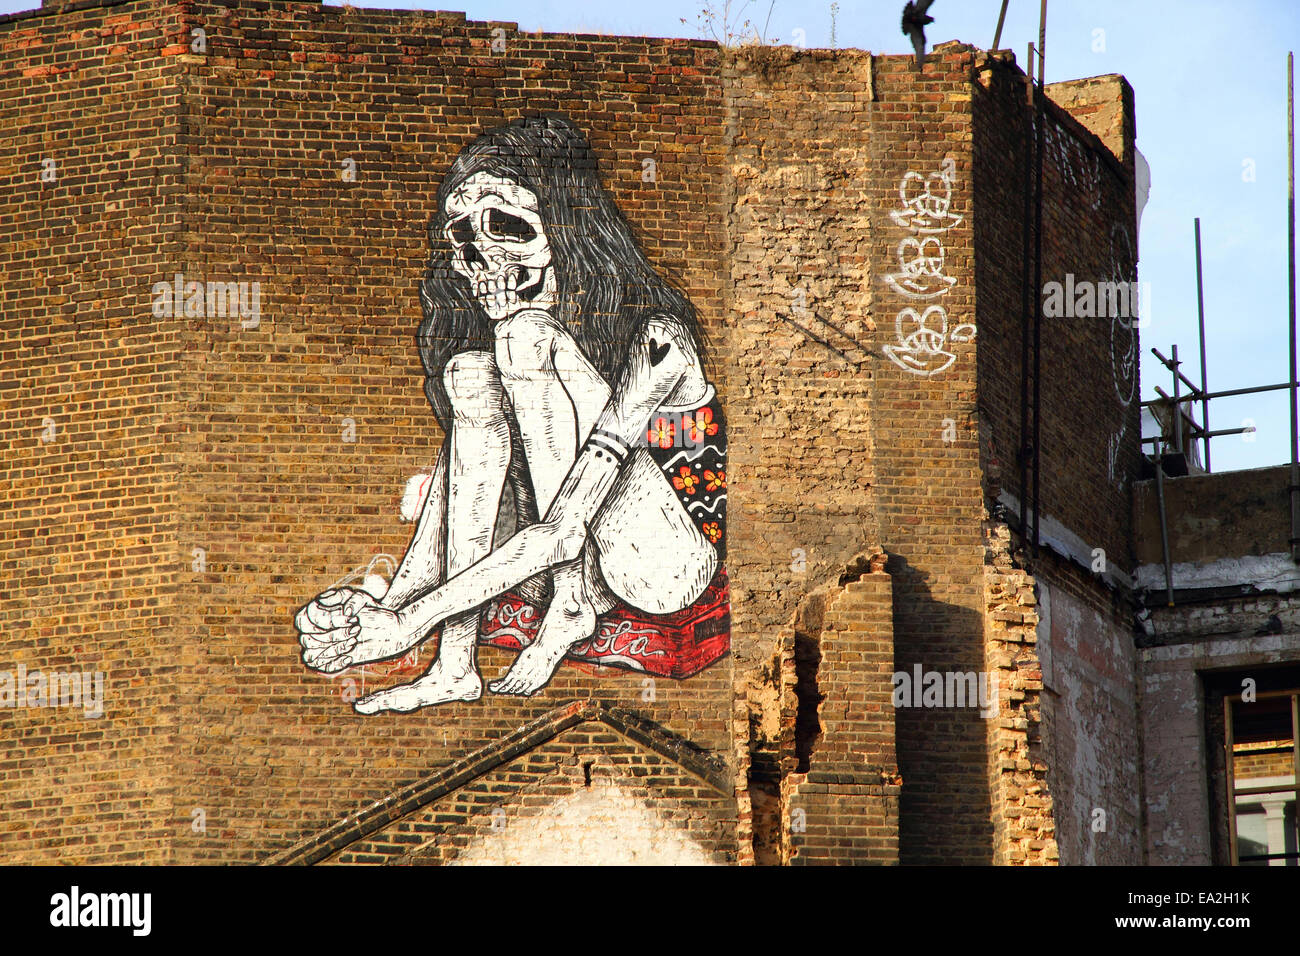 Urban street art in Shoreditch, a est di Londra - Inghilterra Foto Stock